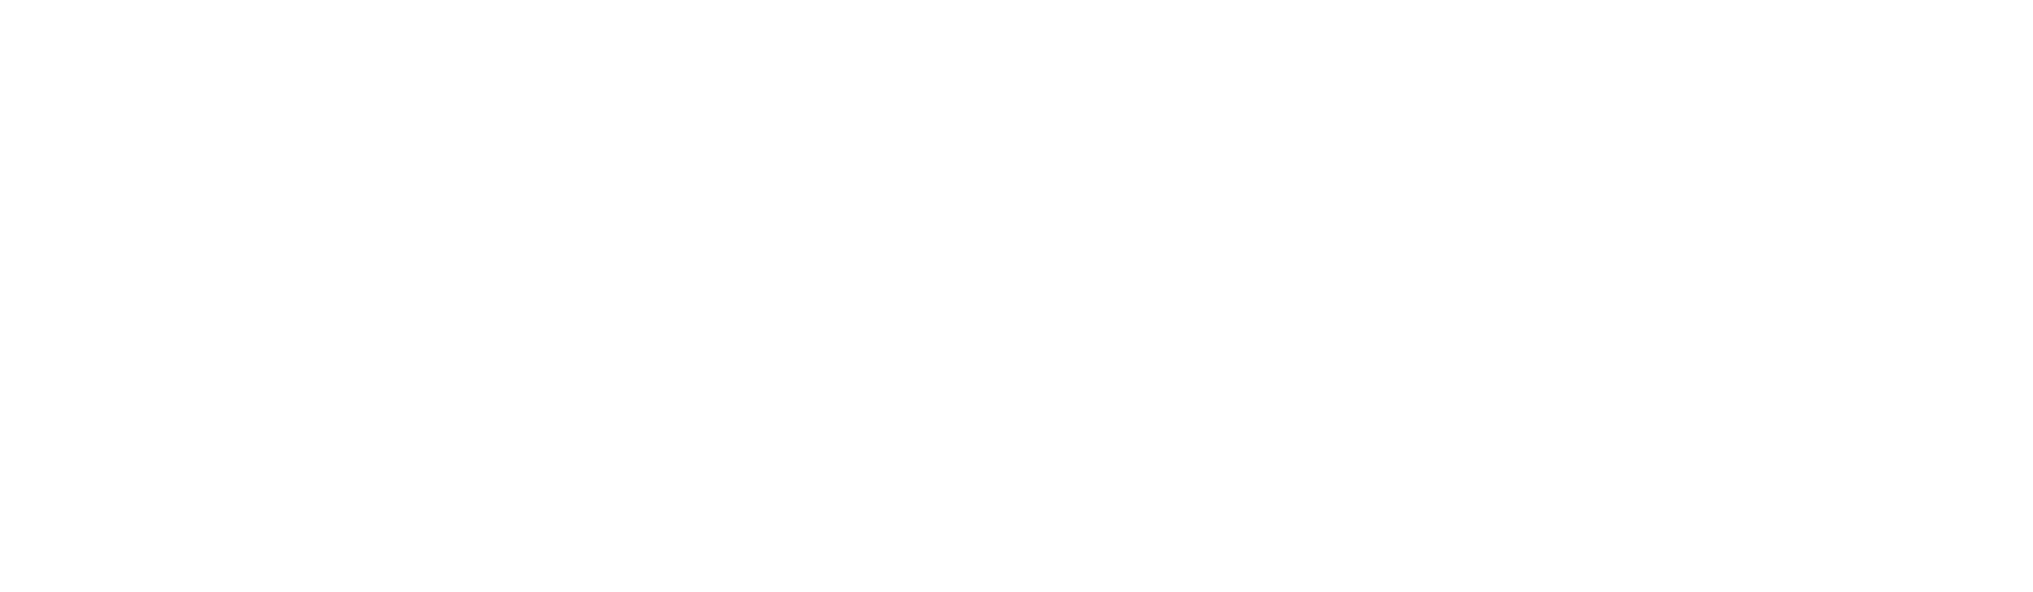 Black and white logo of EPFL (École Polytechnique Fédérale de Lausanne)